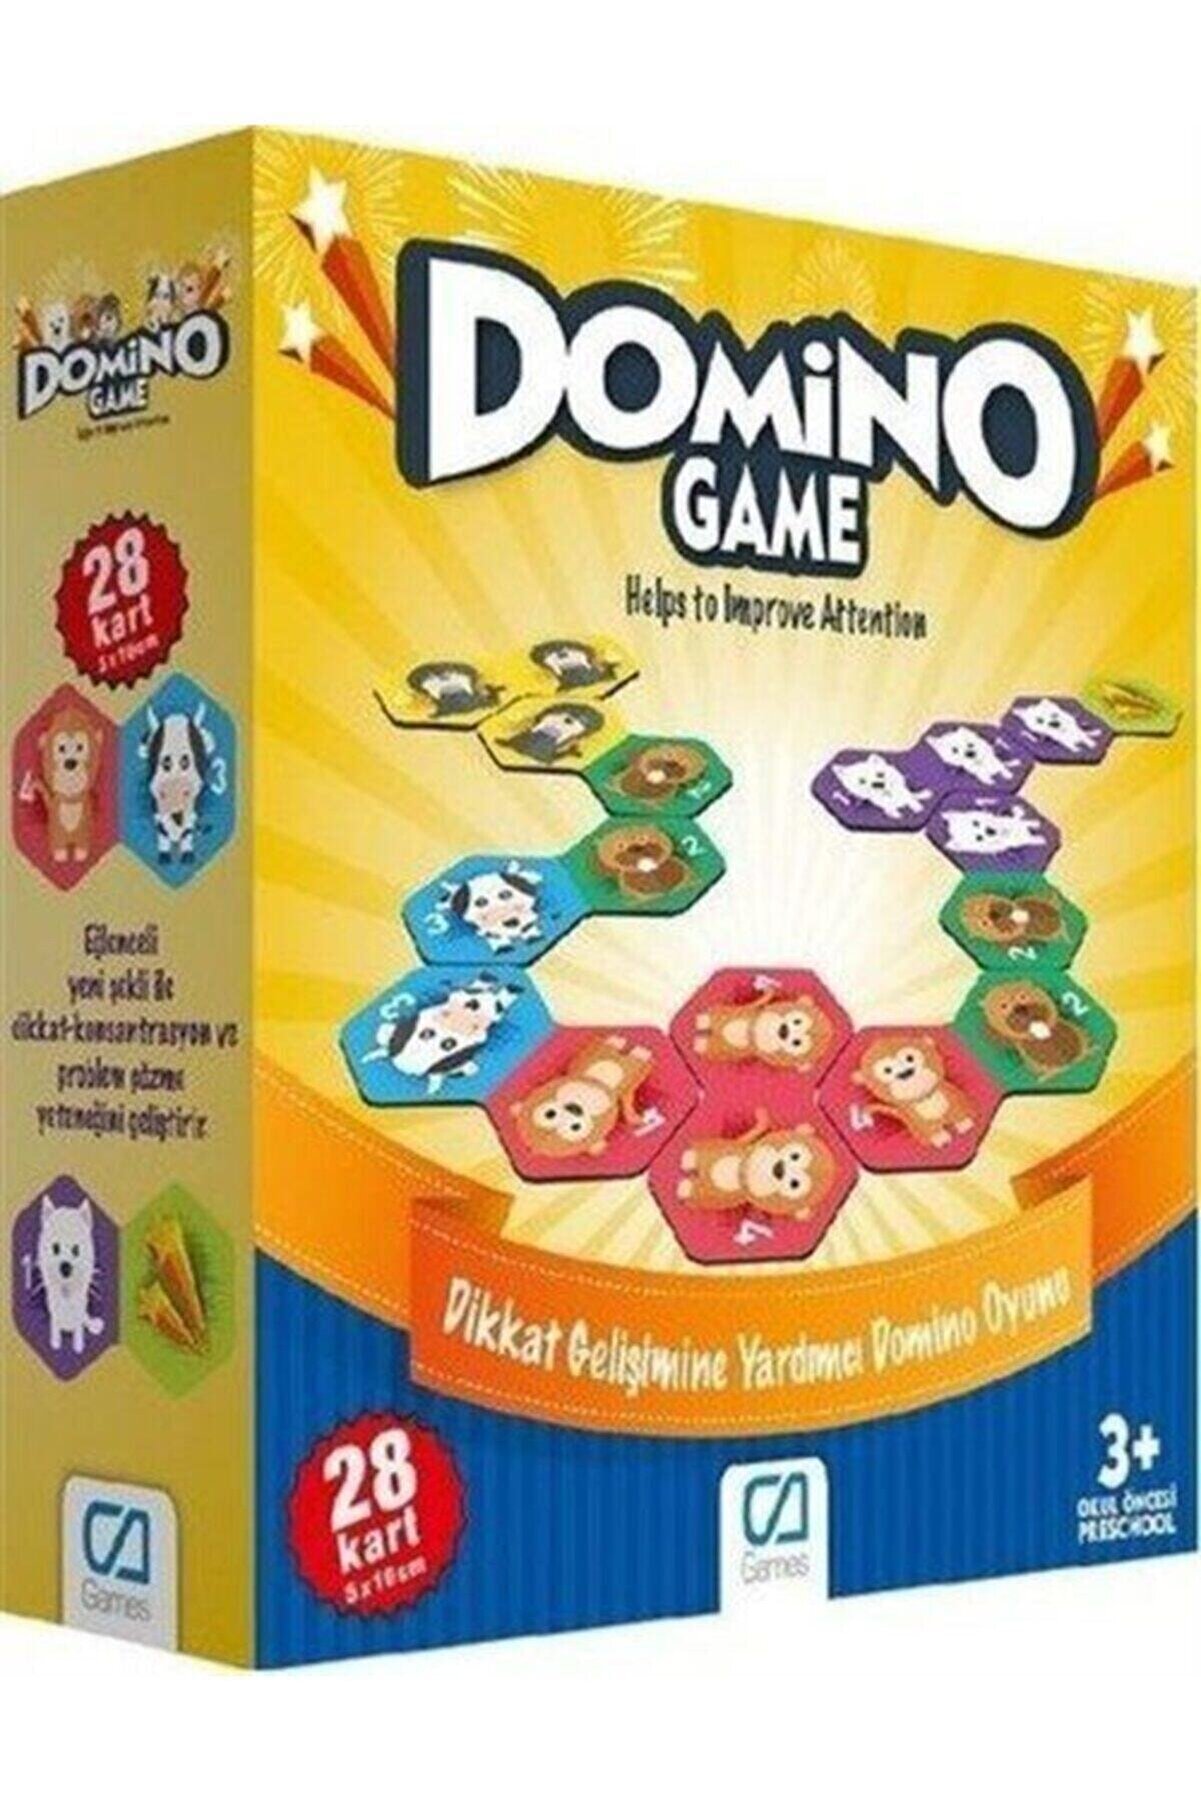 CA Games Domino Game (28 Kart) (ca.10015) & Dikkat Gelişimine Yardımcı Domino Oyunu